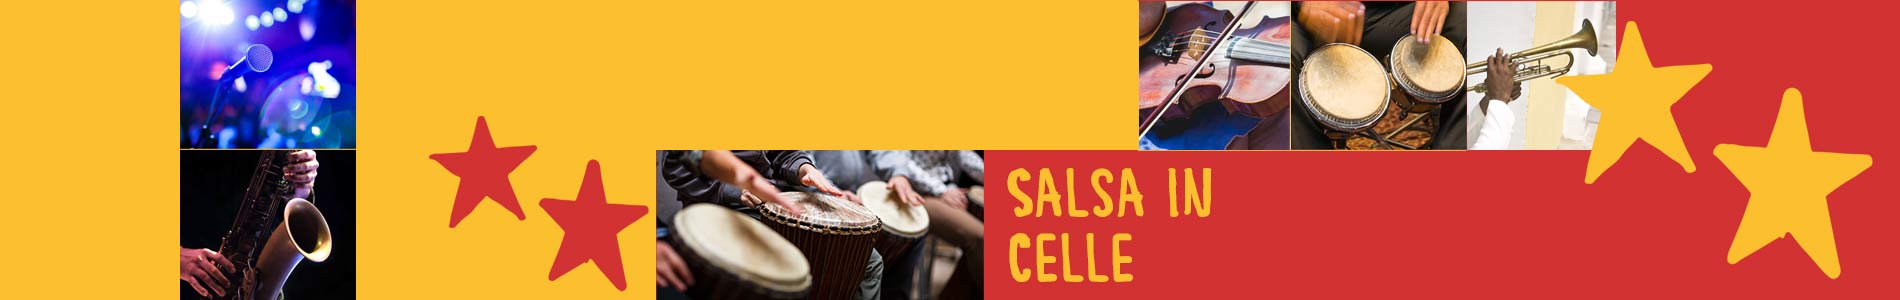 Salsa in Celle – Salsa lernen und tanzen, Tanzkurse, Partys, Veranstaltungen